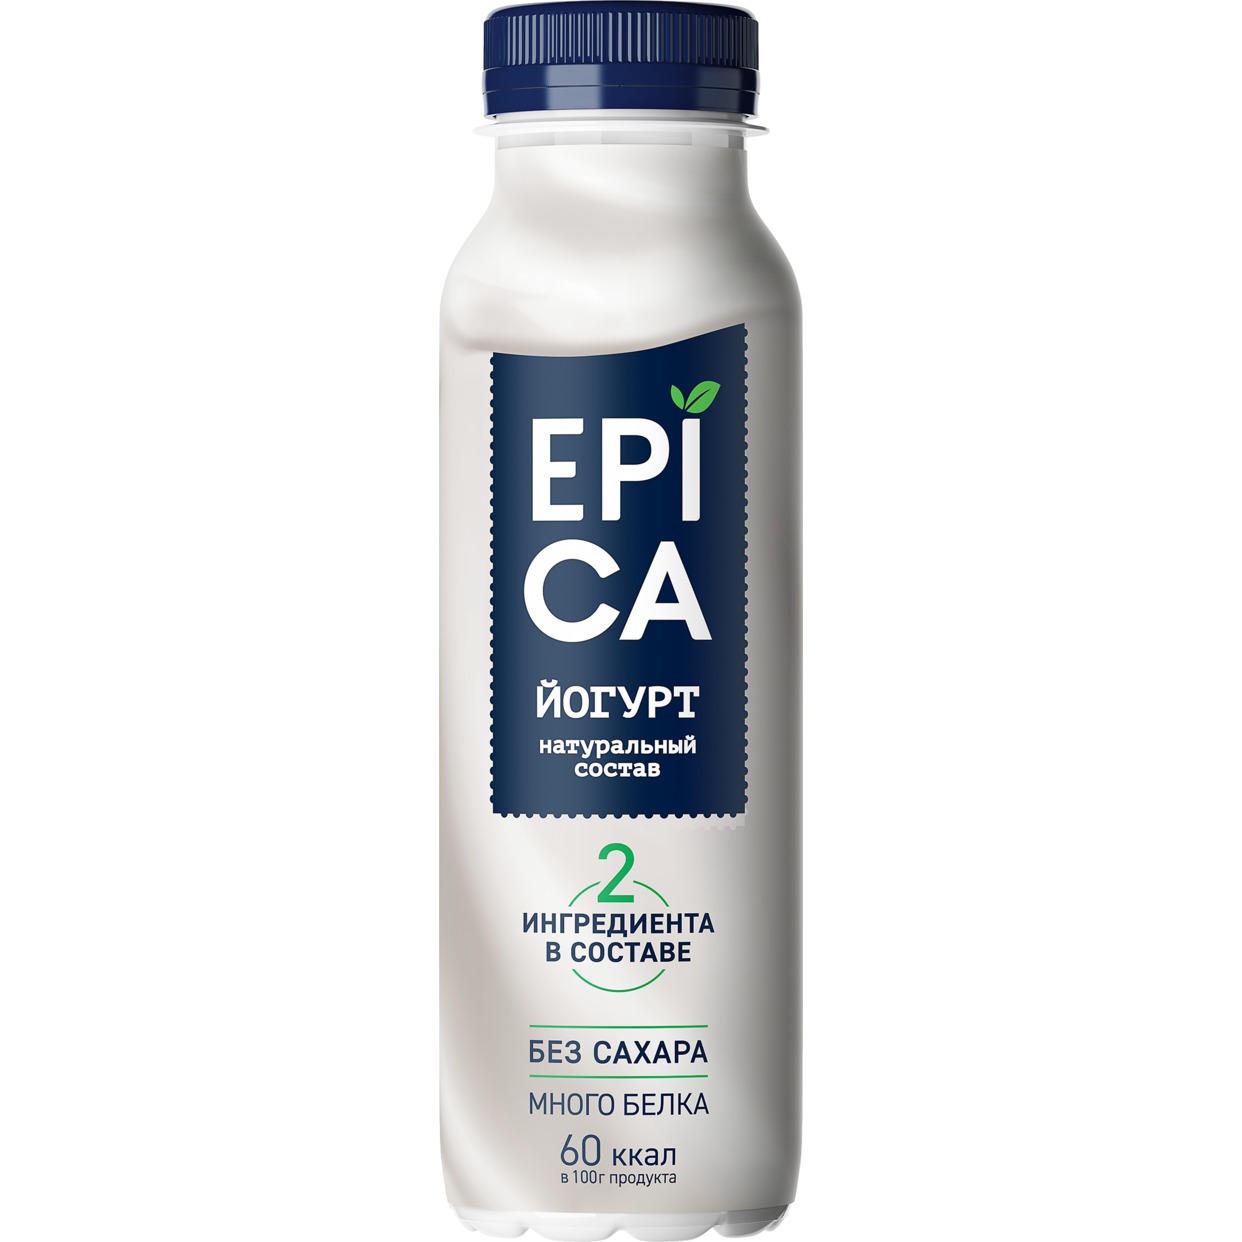 EPICA Йогурт пит.2,9% 290г по акции в Пятерочке